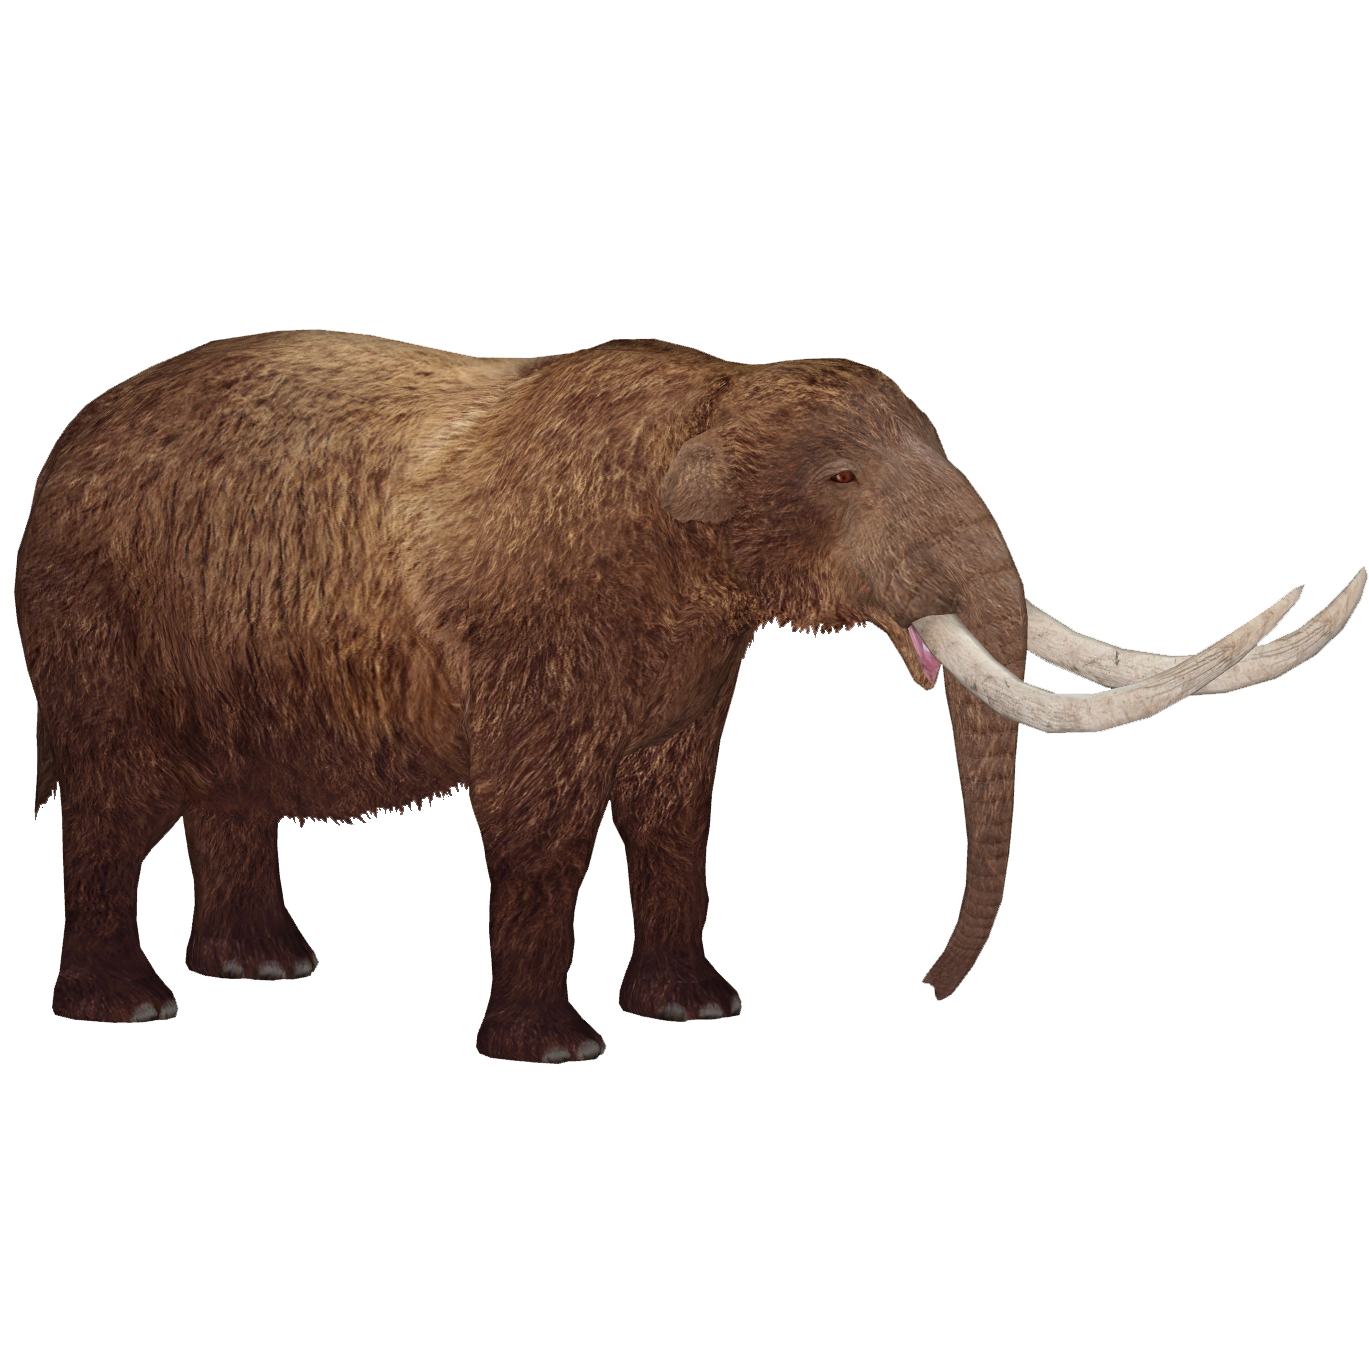 american mastodon